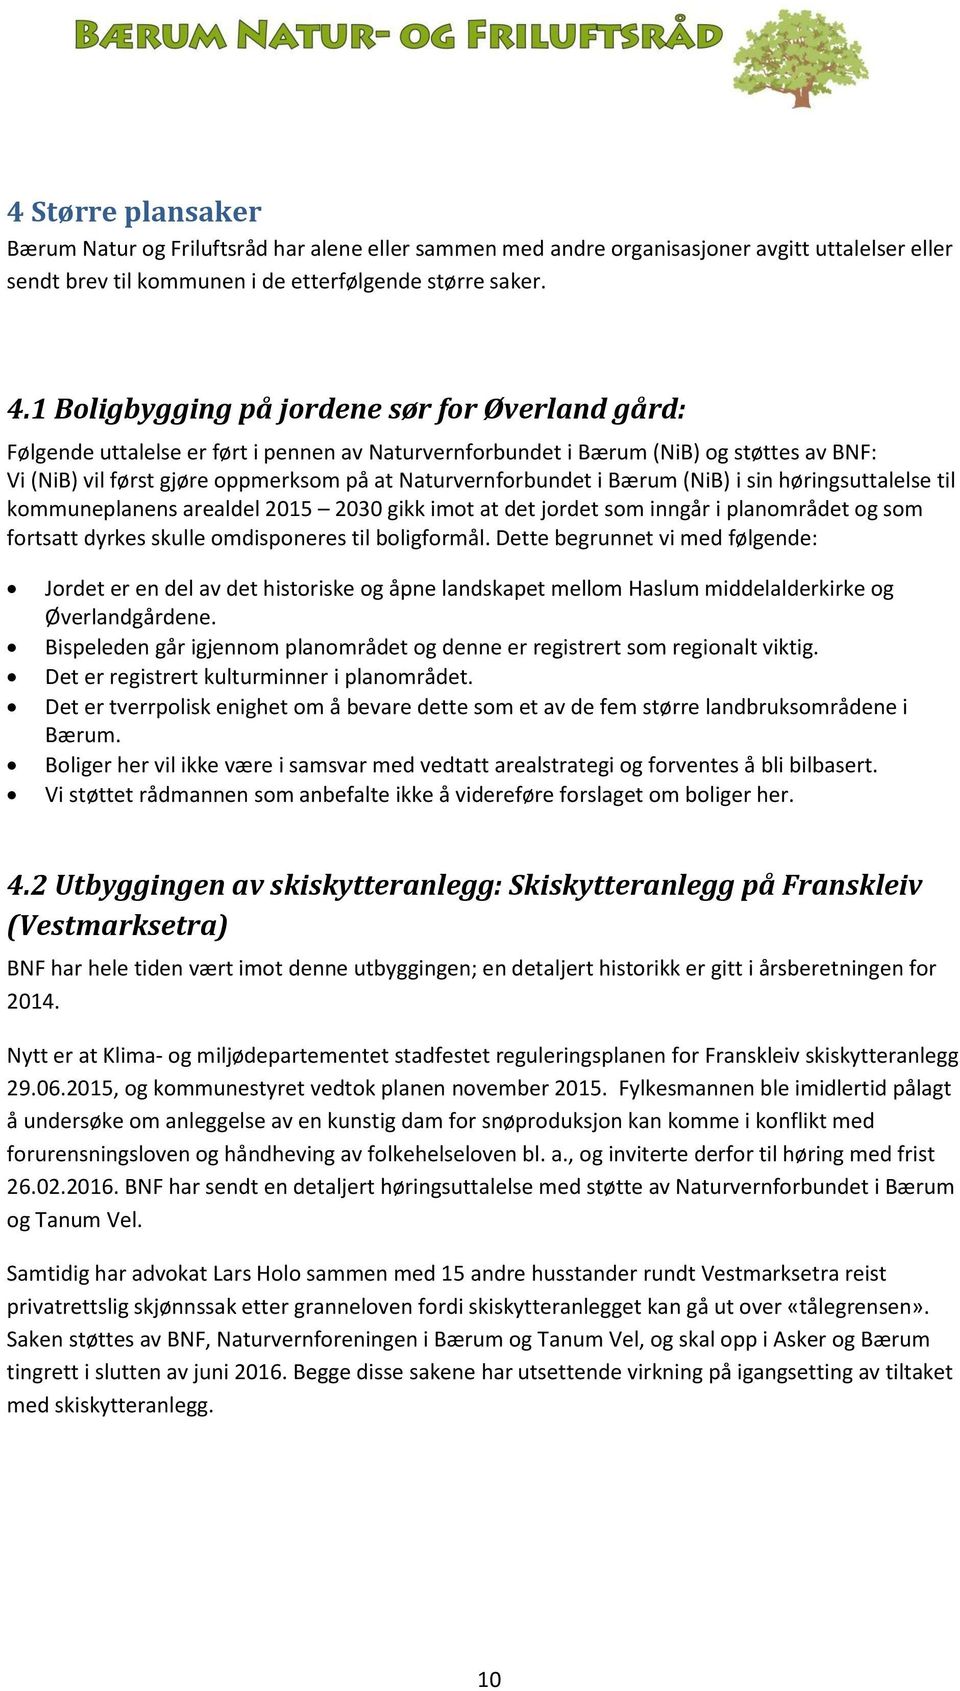 Naturvernforbundet i Bærum (NiB) i sin høringsuttalelse til kommuneplanens arealdel 2015 2030 gikk imot at det jordet som inngår i planområdet og som fortsatt dyrkes skulle omdisponeres til